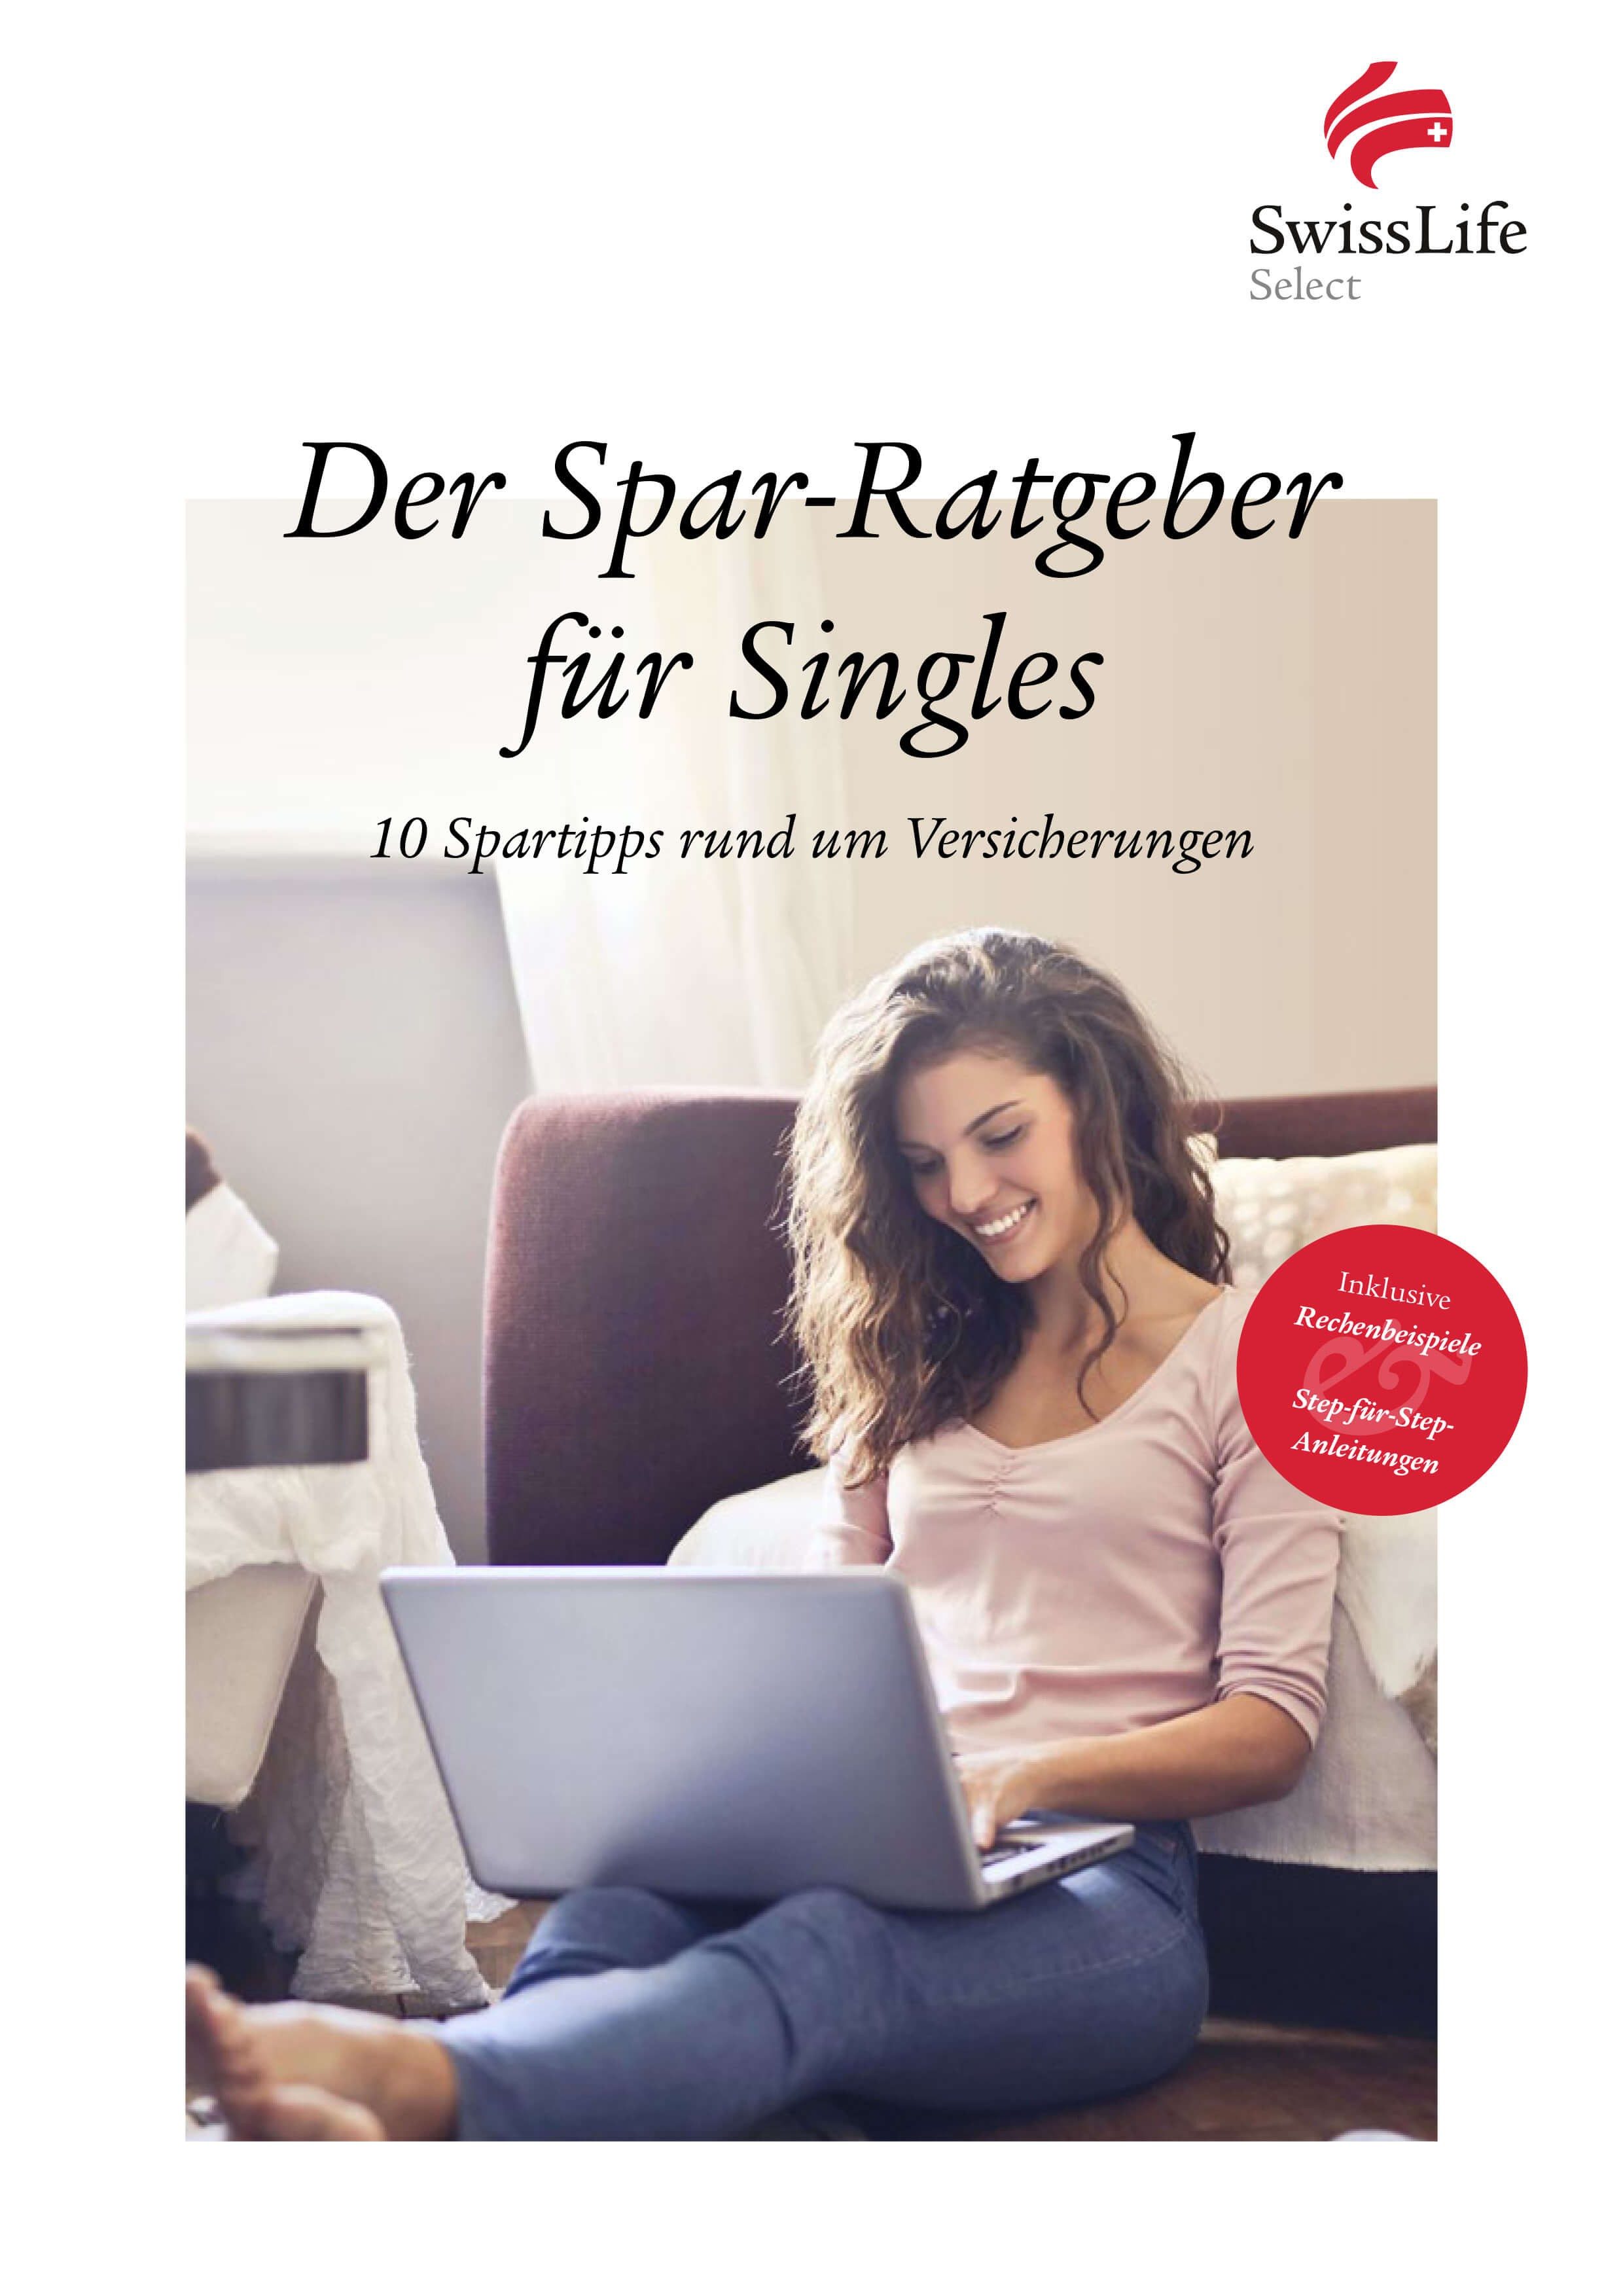 sls-ratgeber-cover-singles